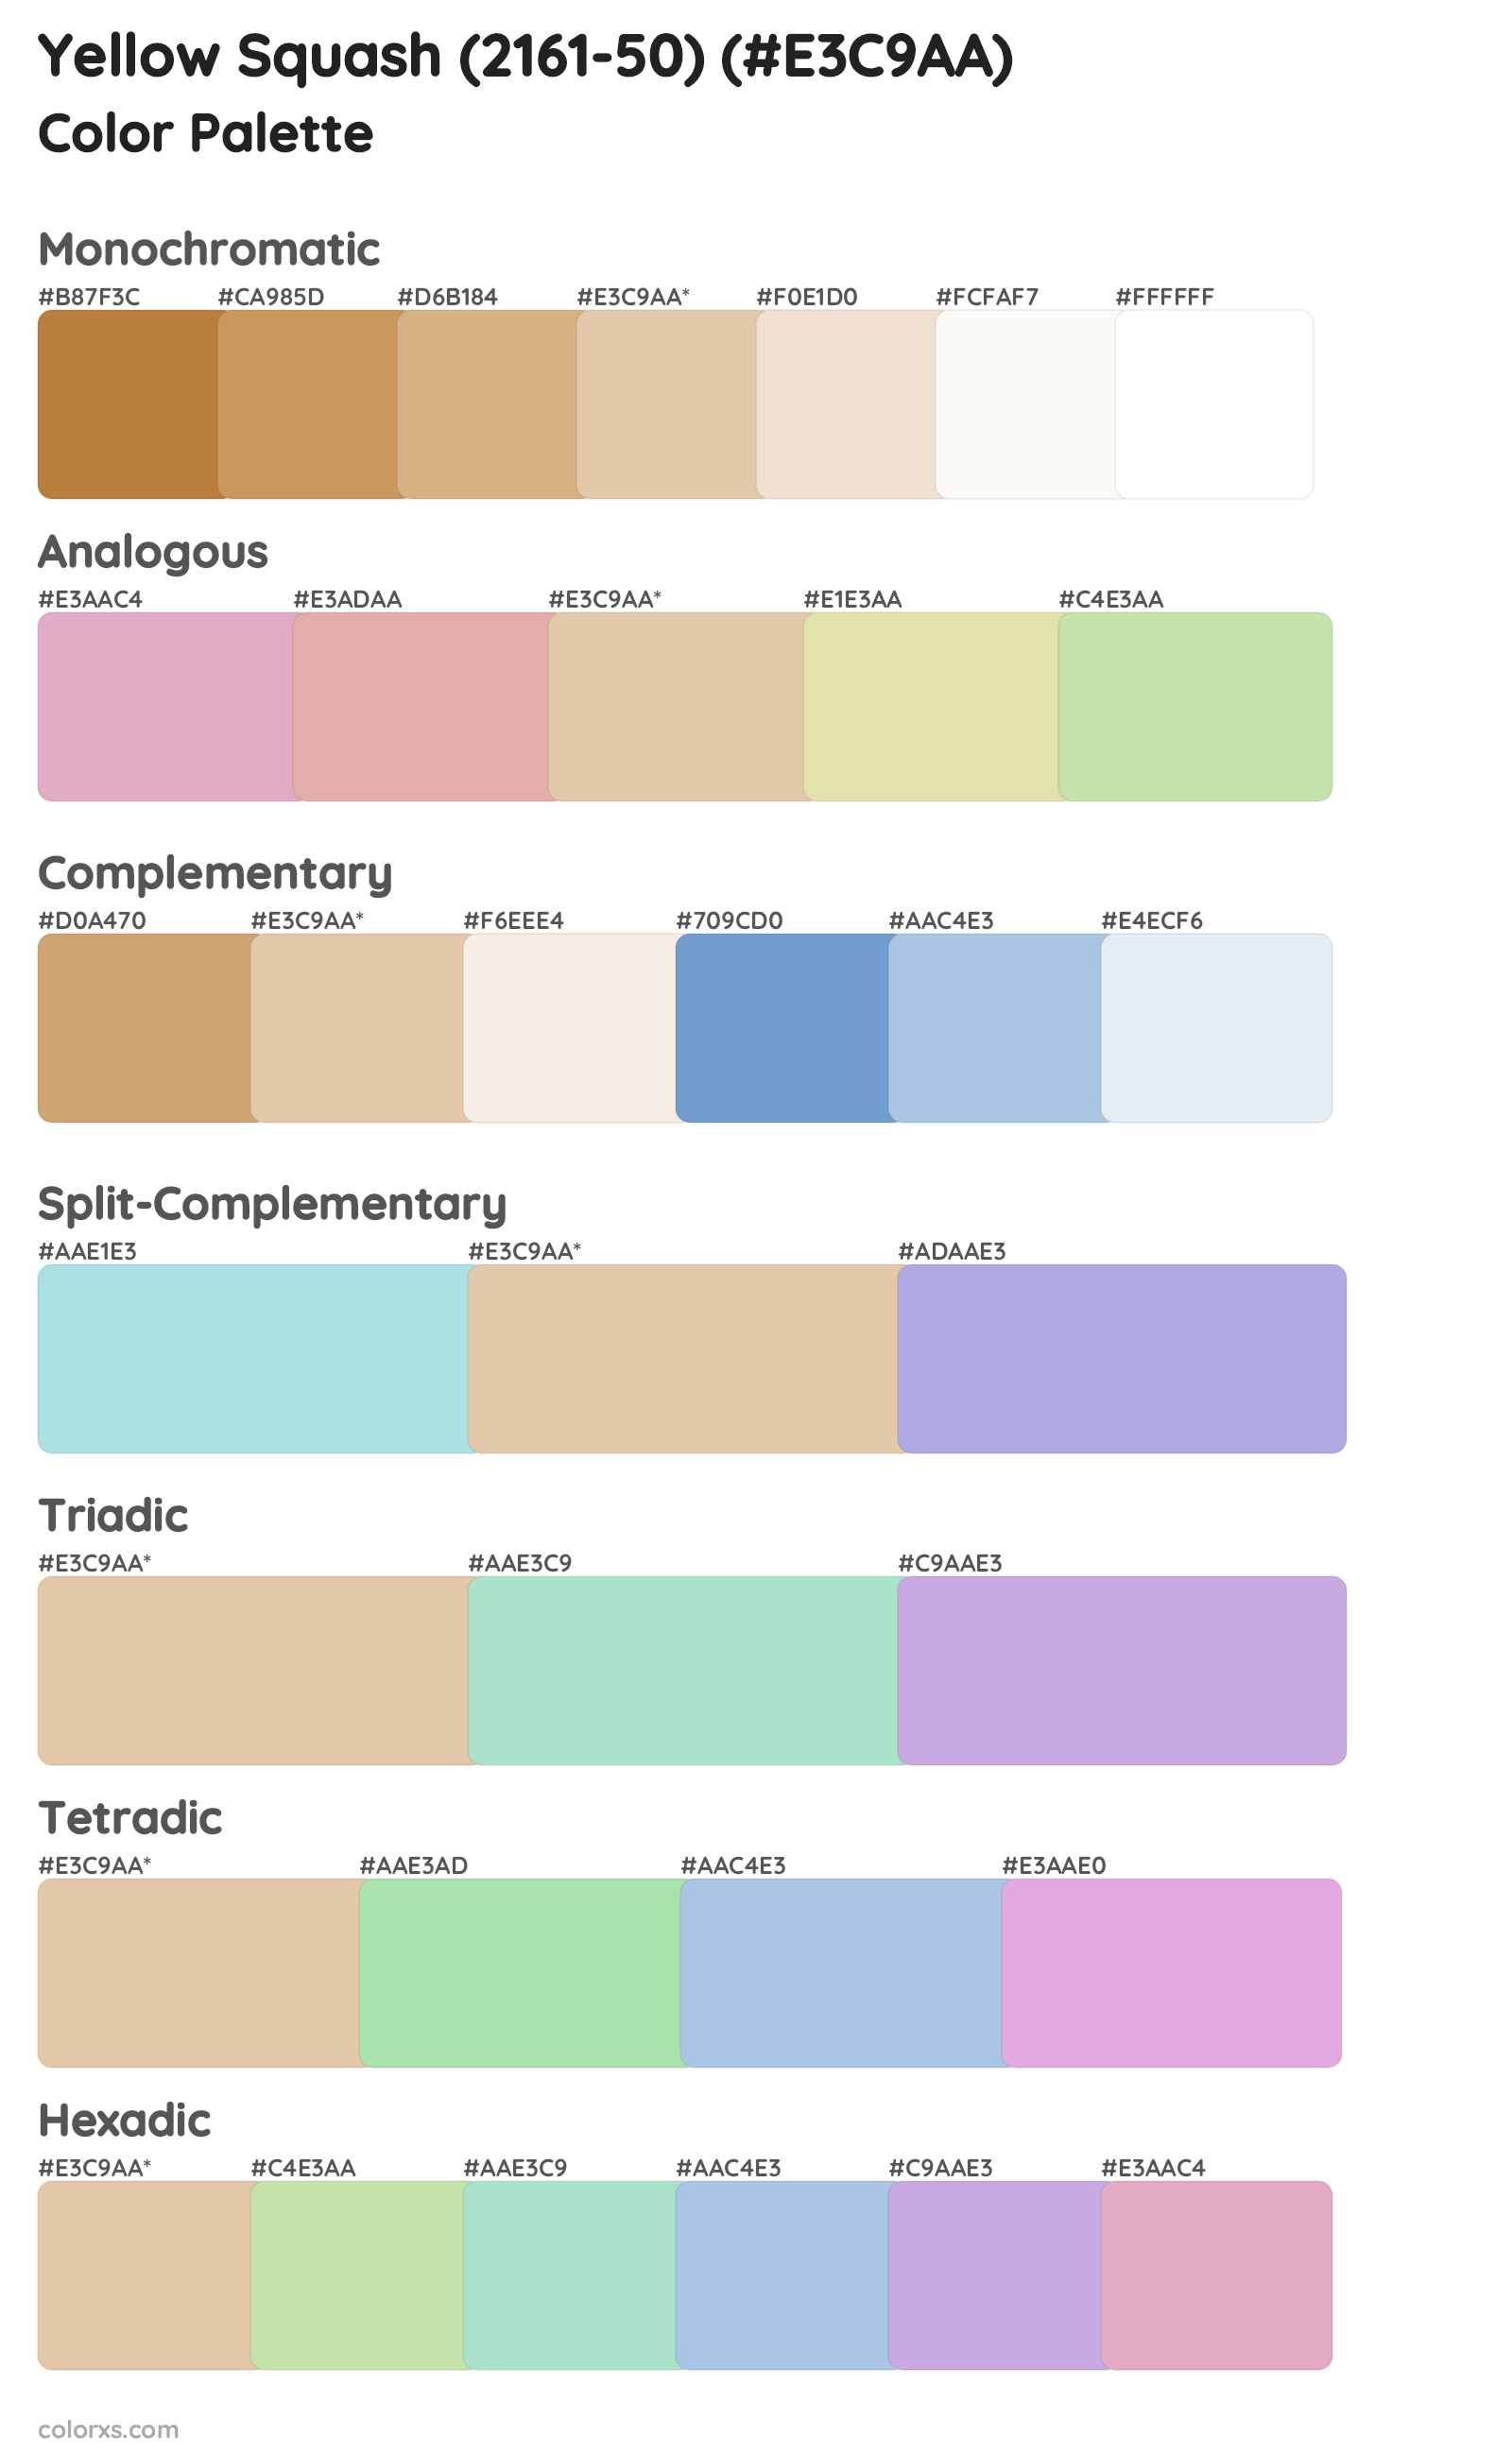 Yellow Squash (2161-50) Color Scheme Palettes